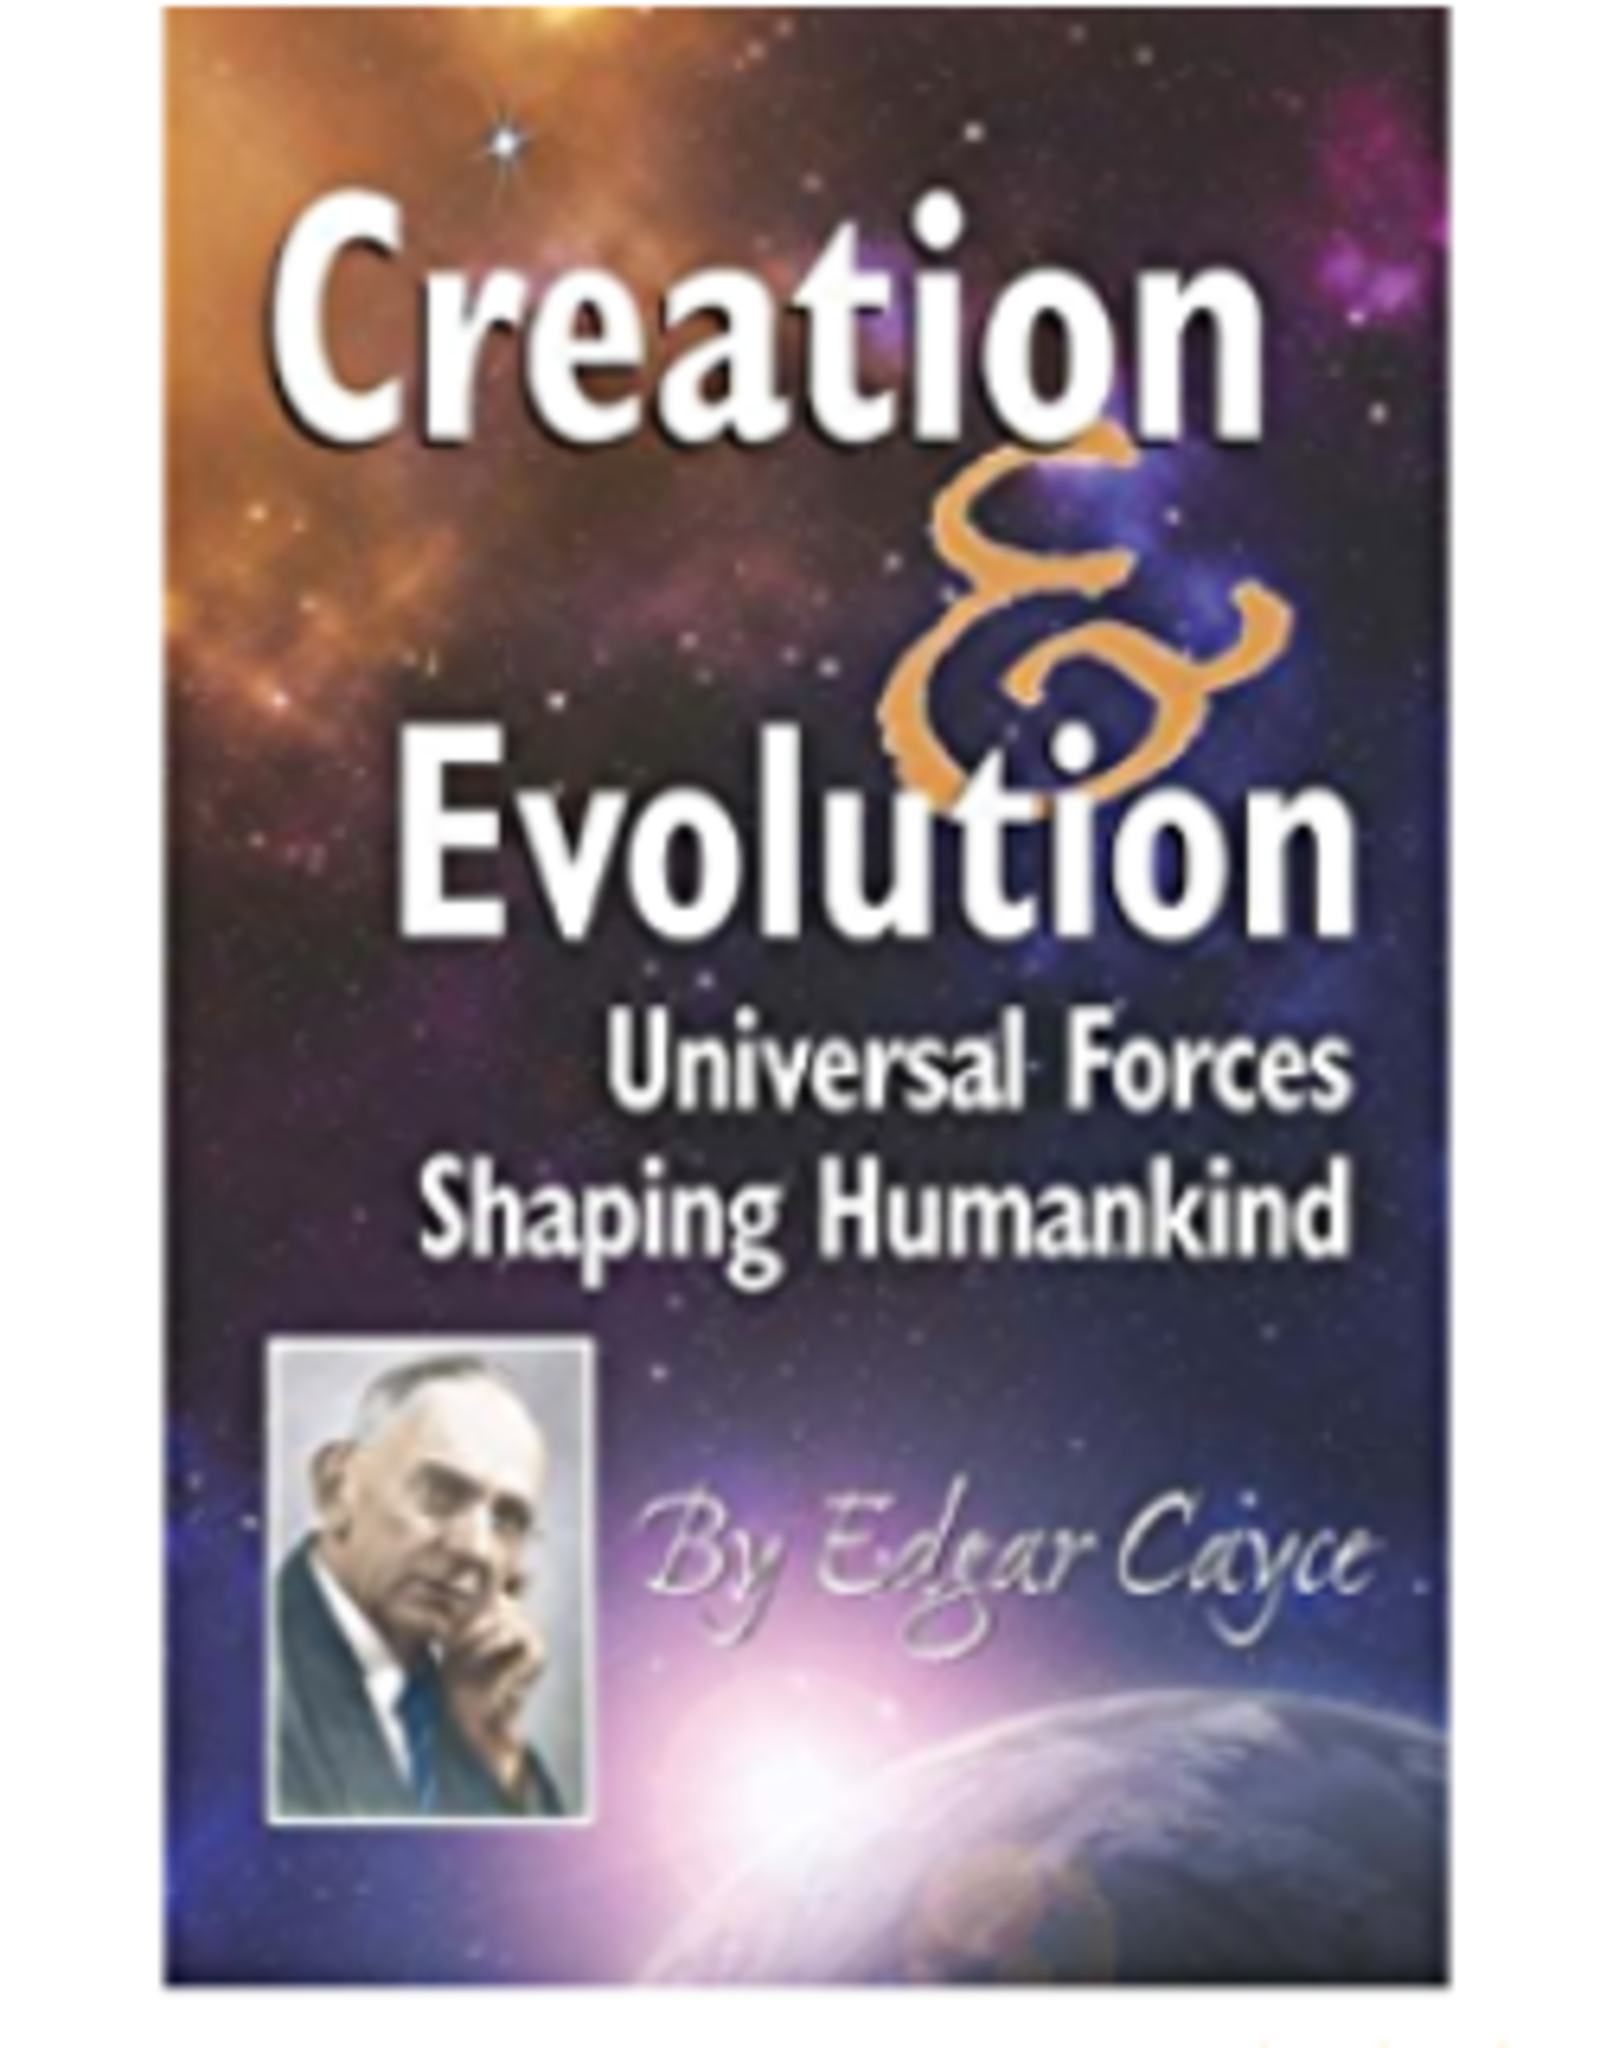 Edgar Cayce Creation & Evolution by Edgar Cayce